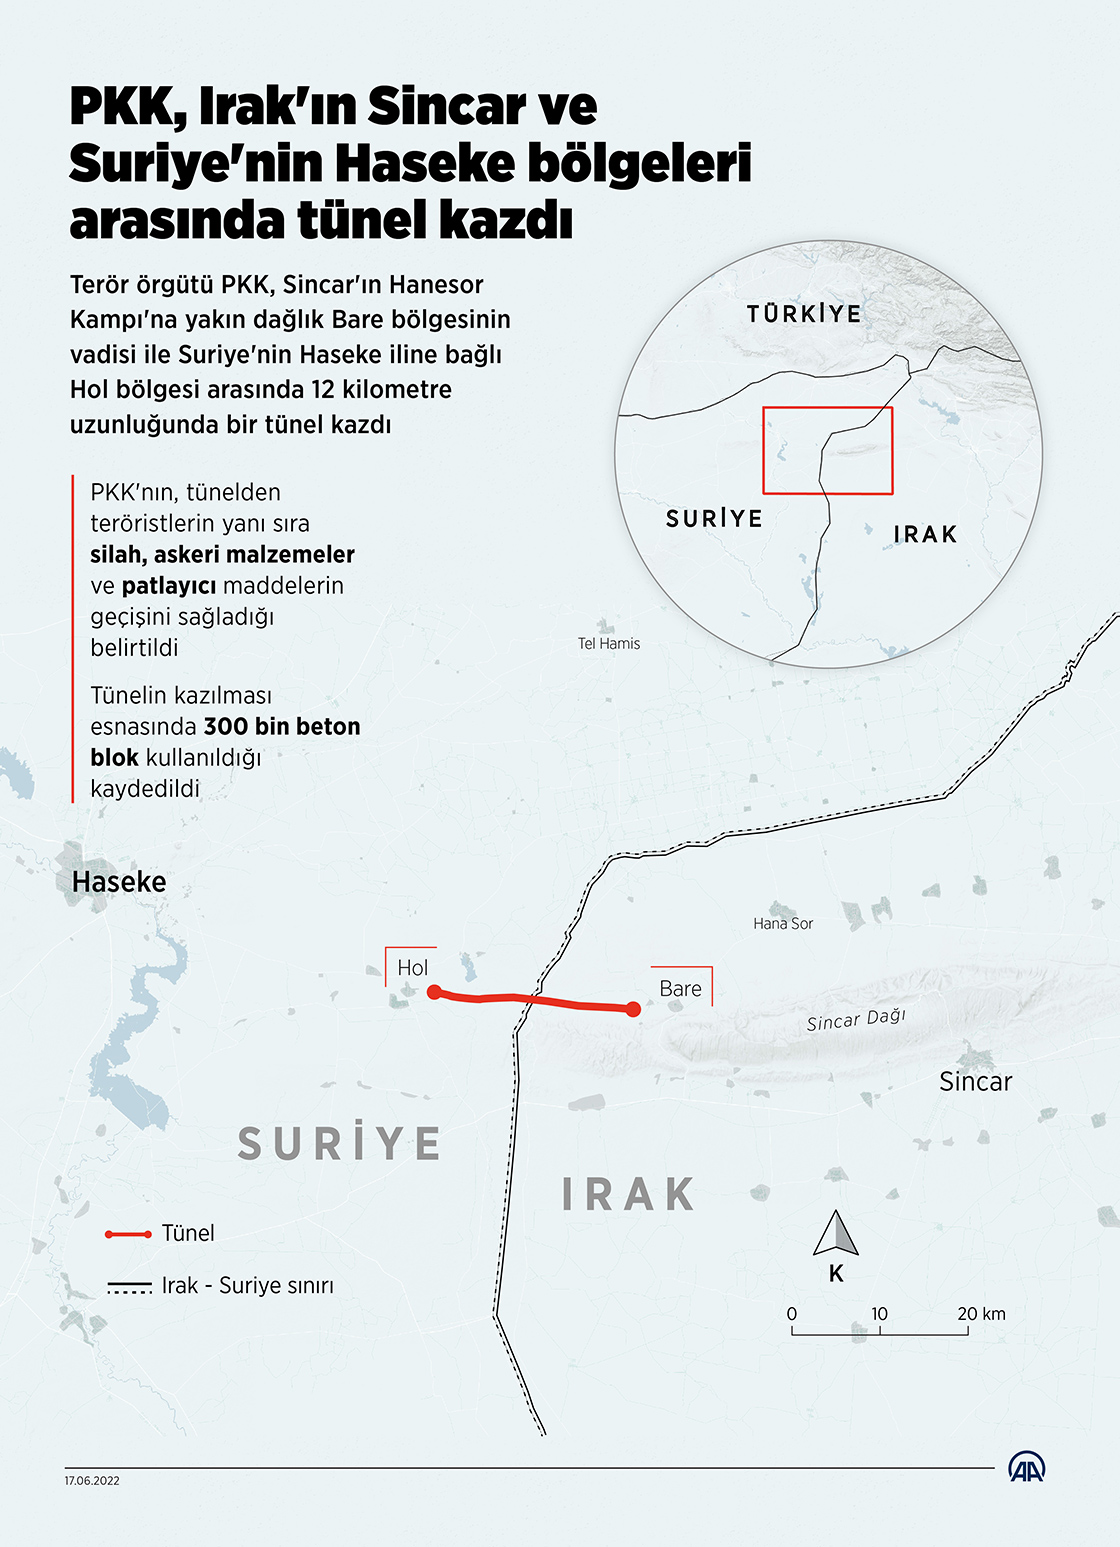 PKK, Irak'ın Sincar ve Suriye'nin Haseke bölgeleri arasında tünel kazdı